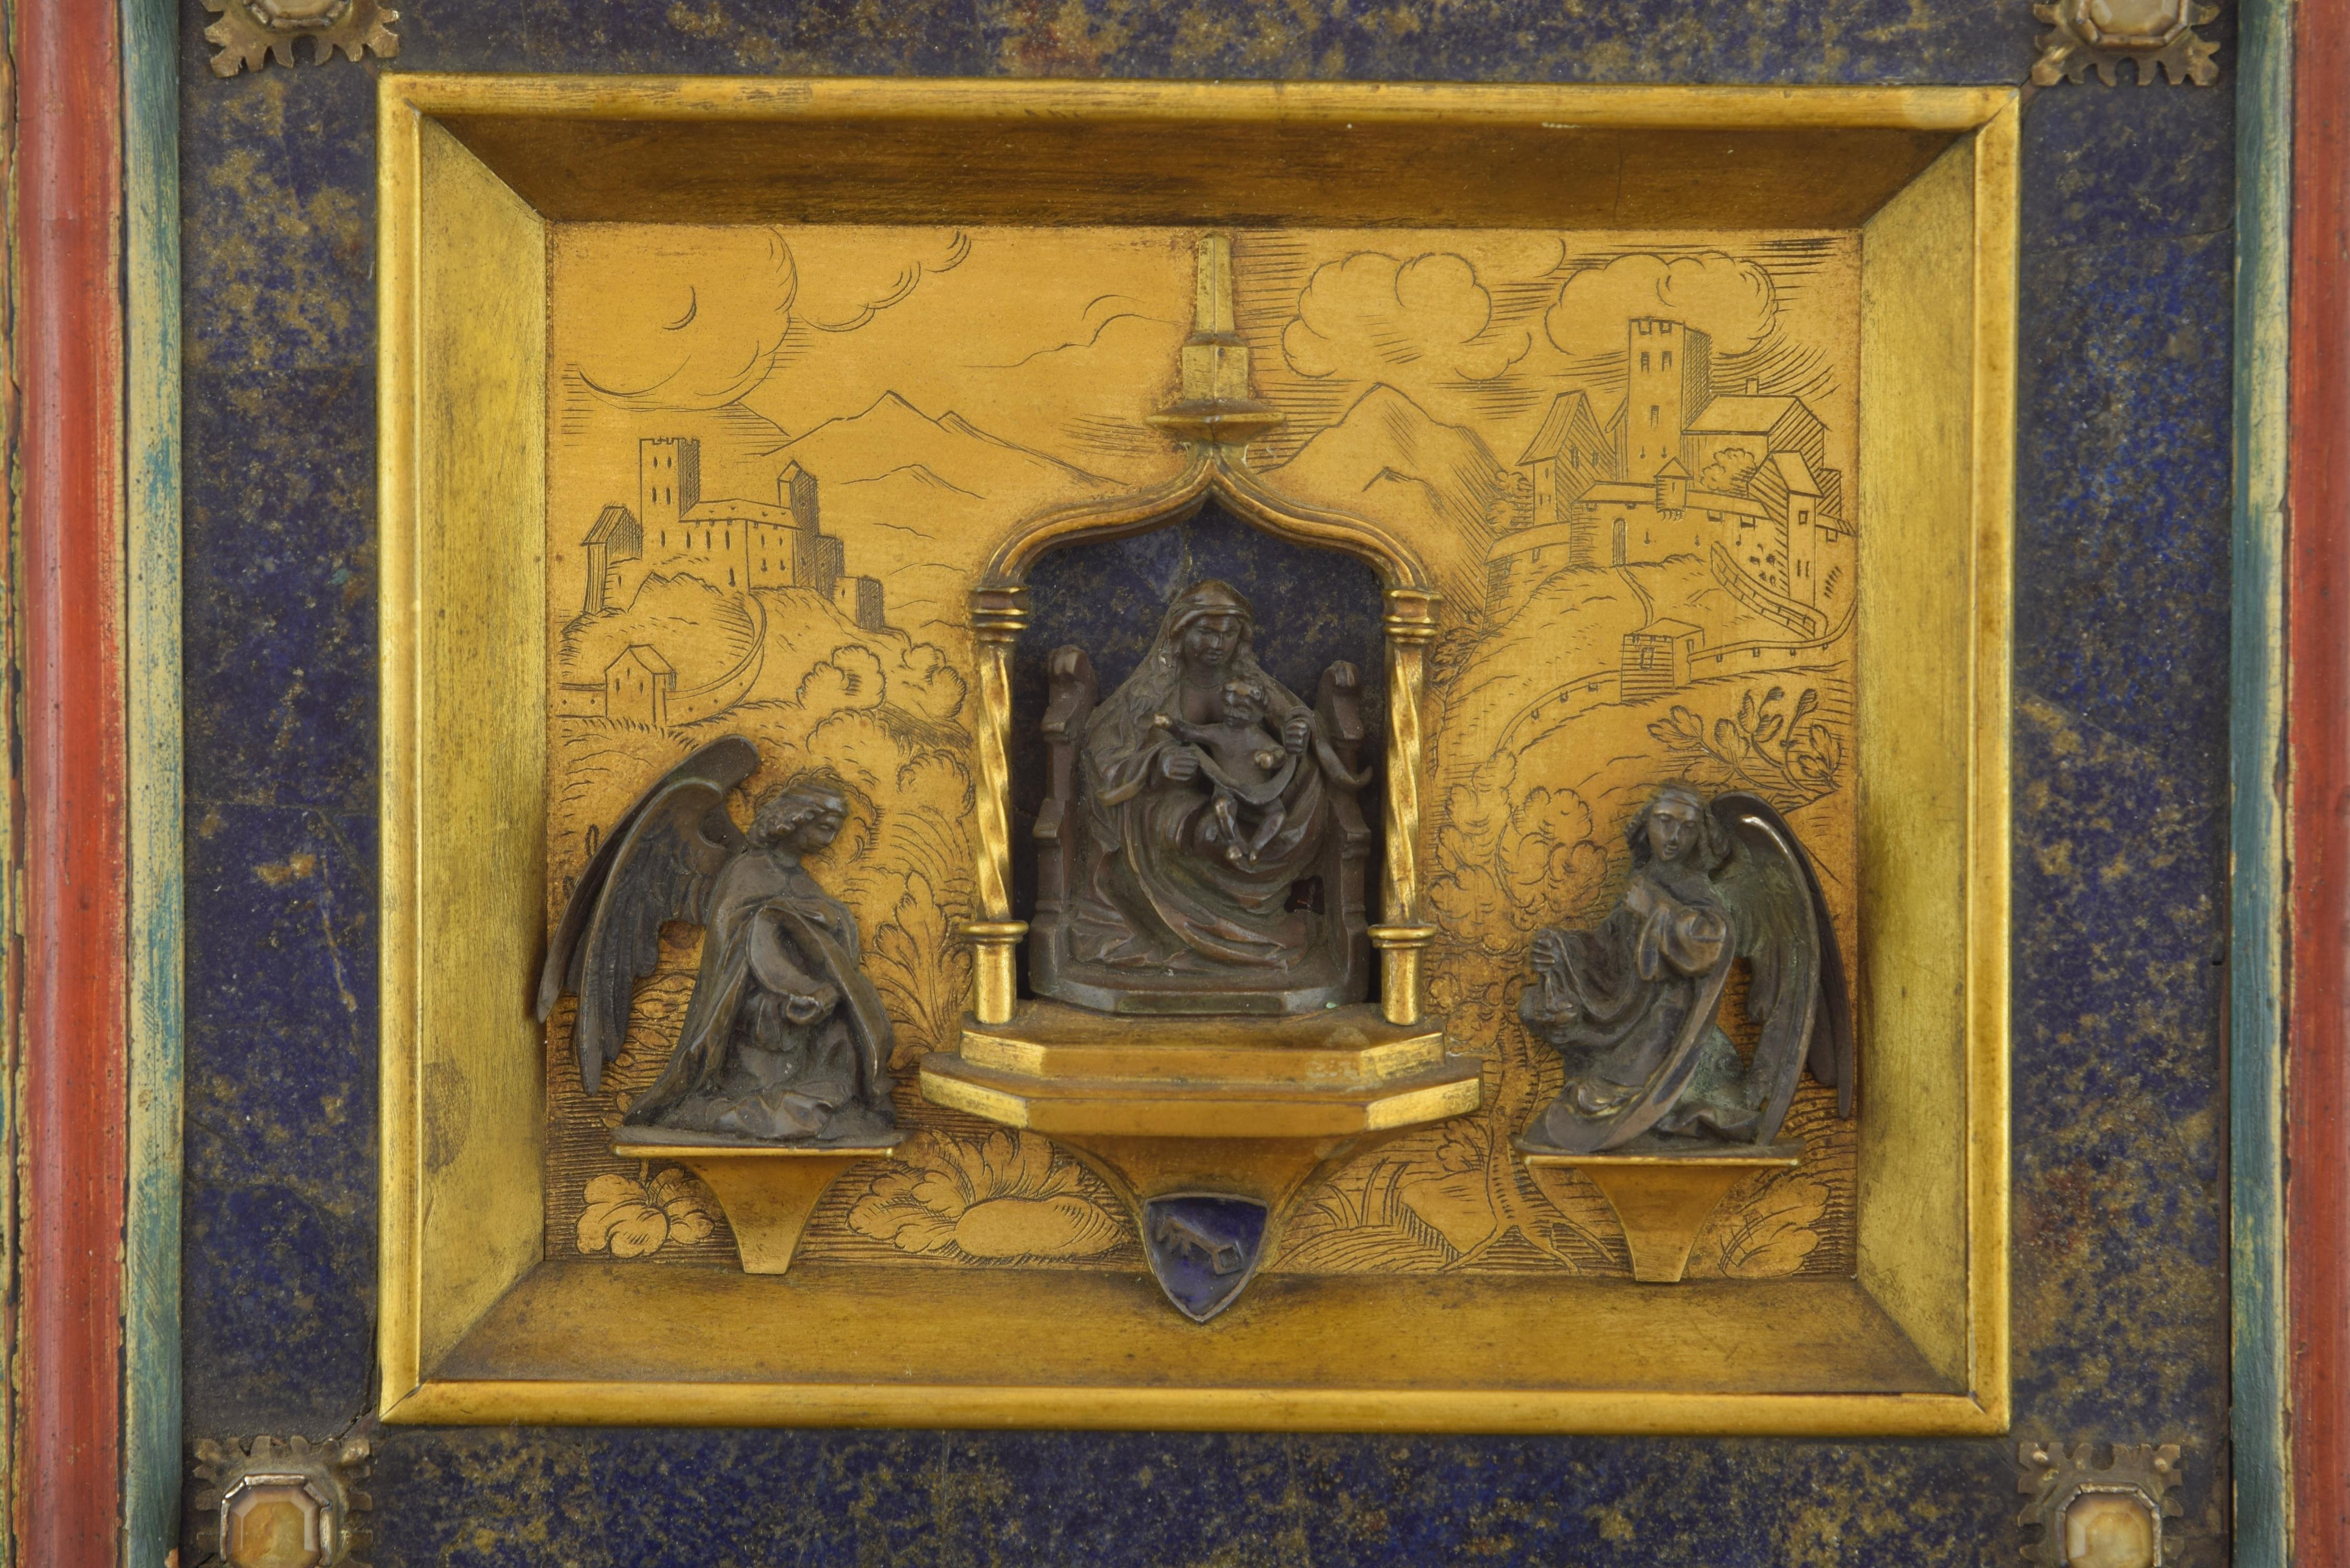 Bronze in seiner Farbe und Gold, Lapislazuli, Bergkristall, Emaille.
In der Mitte des Werks thront die Figur der Maria, die einen Mantel (Kamin) auf den Schultern und im Haar trägt und auf ihren Knien das Kind hält, das sich an einen der Engel